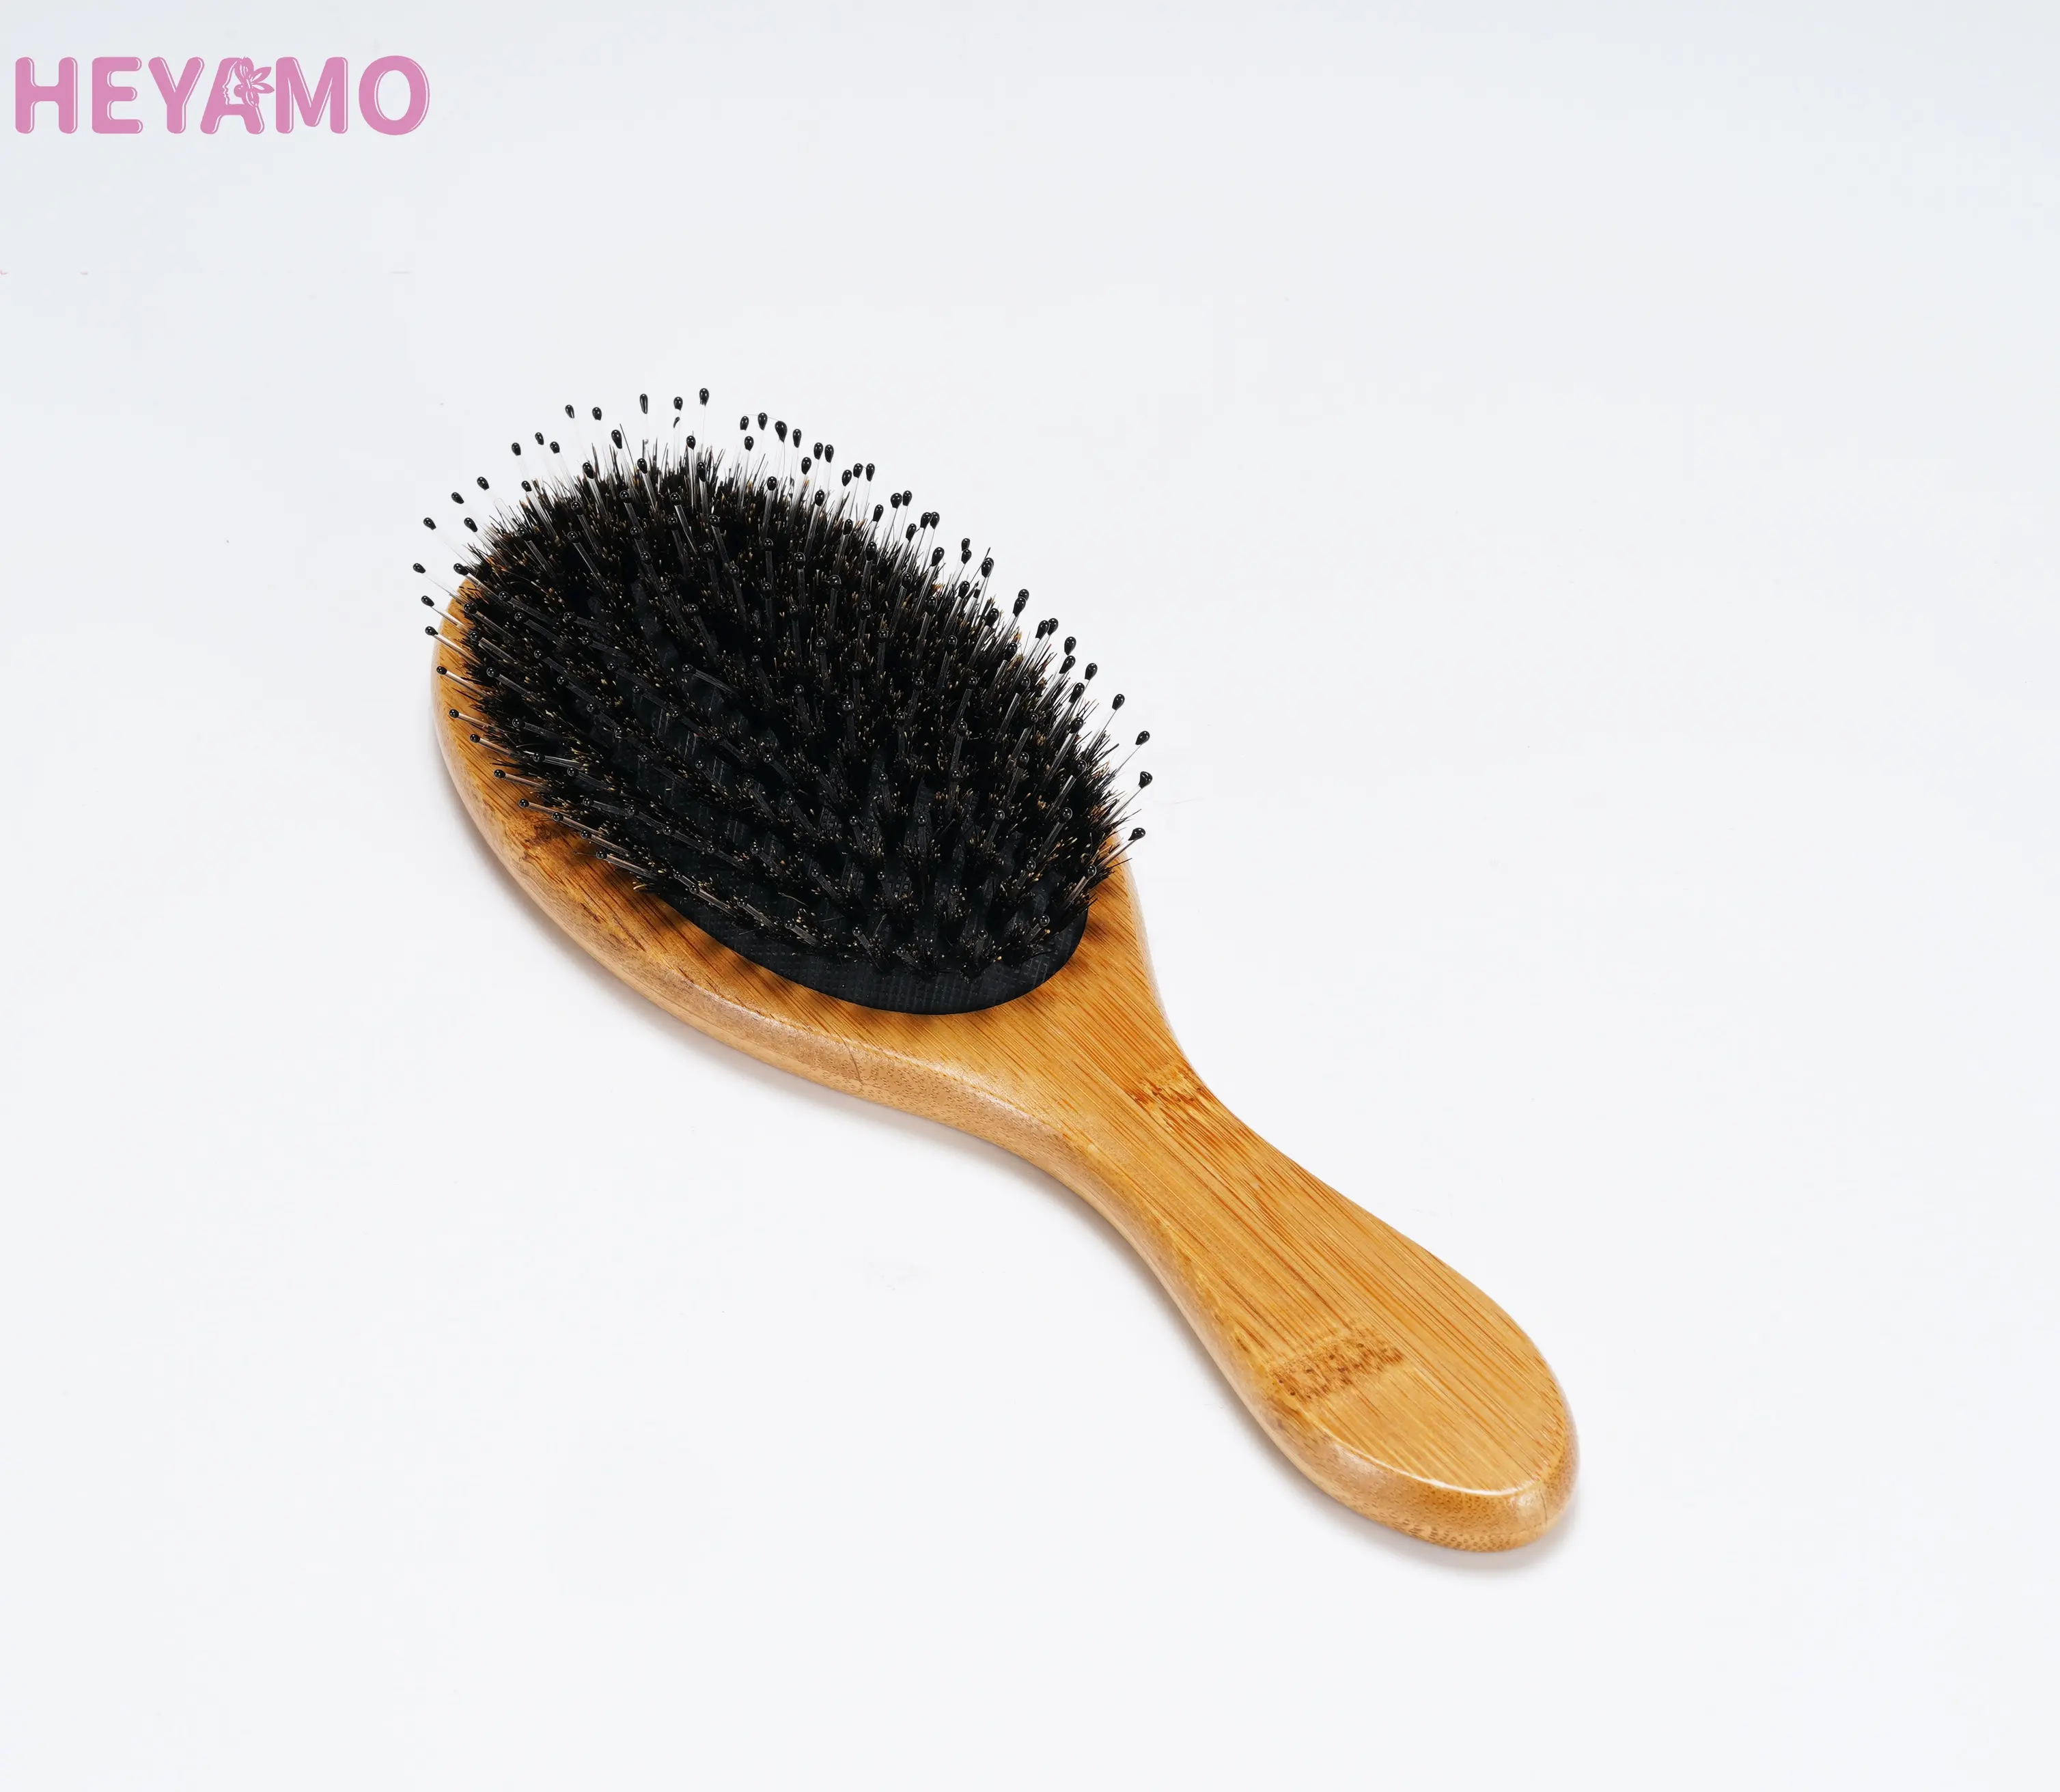 HEYAMOユニークな竹の木の剛毛ヘアブラシBrosse a Cheveux環境にやさしい製品木製ヘアブラシウェットデタングルブラシペタイン